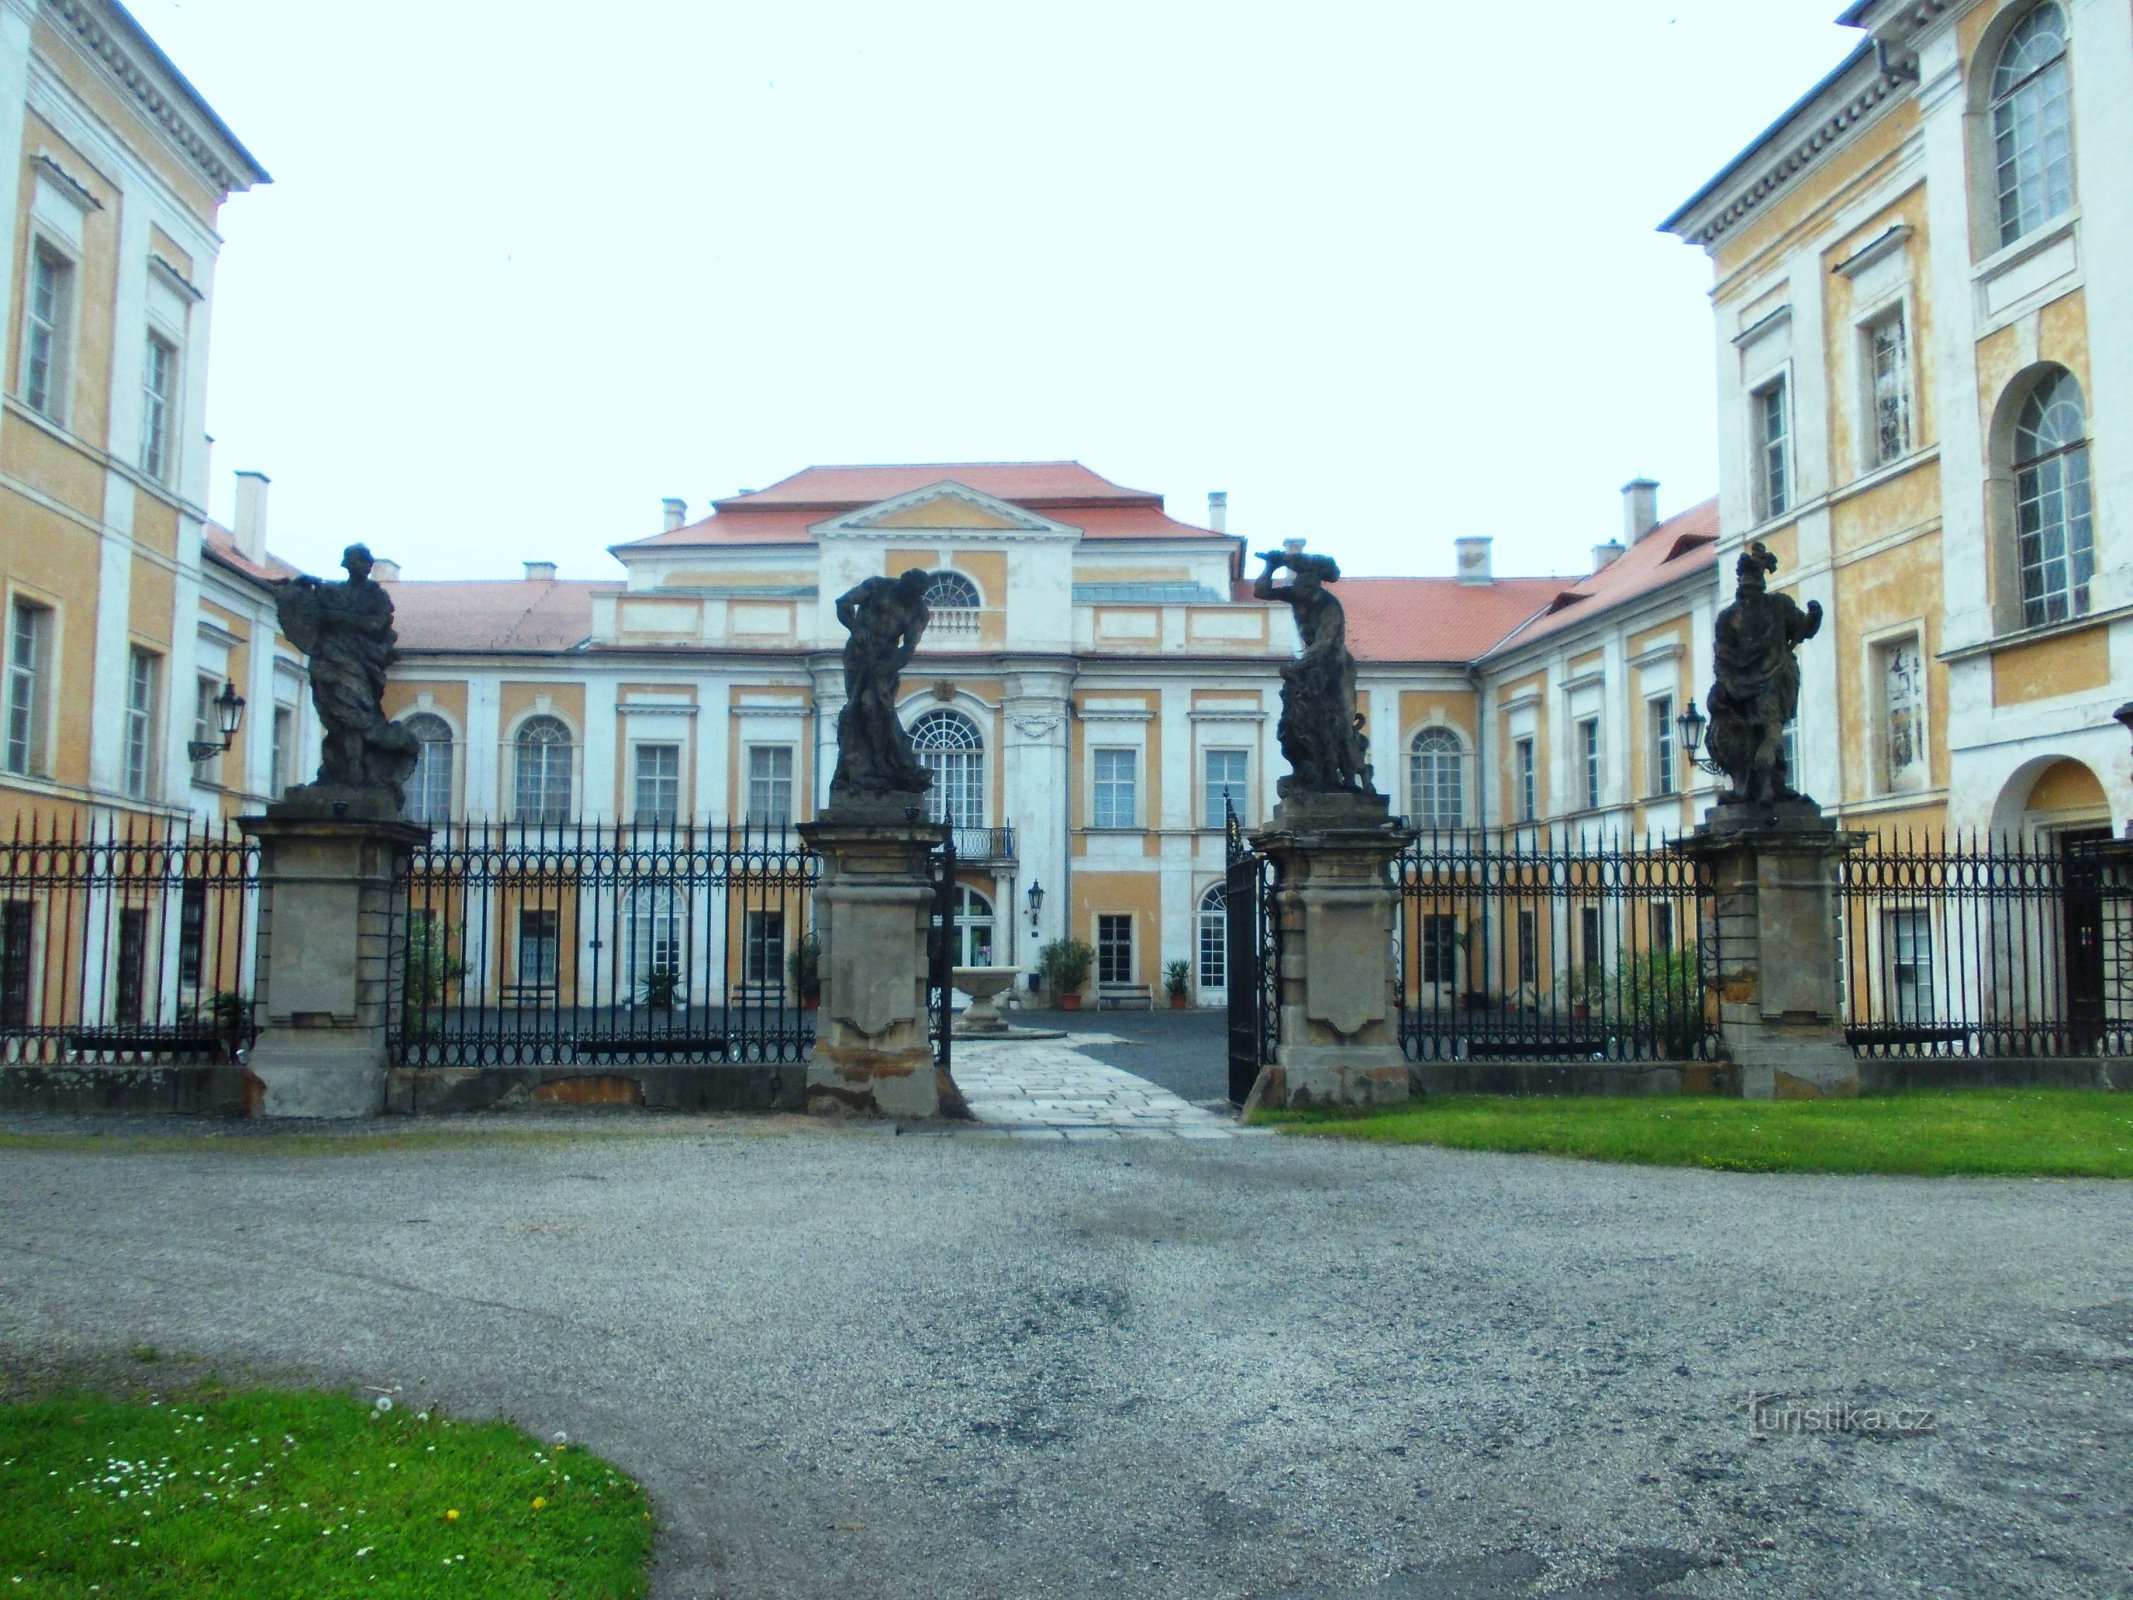 Eingang zum Schloss mit 4 Statuen von Minerva, Mars und zweimal Herkules von Meister Braun